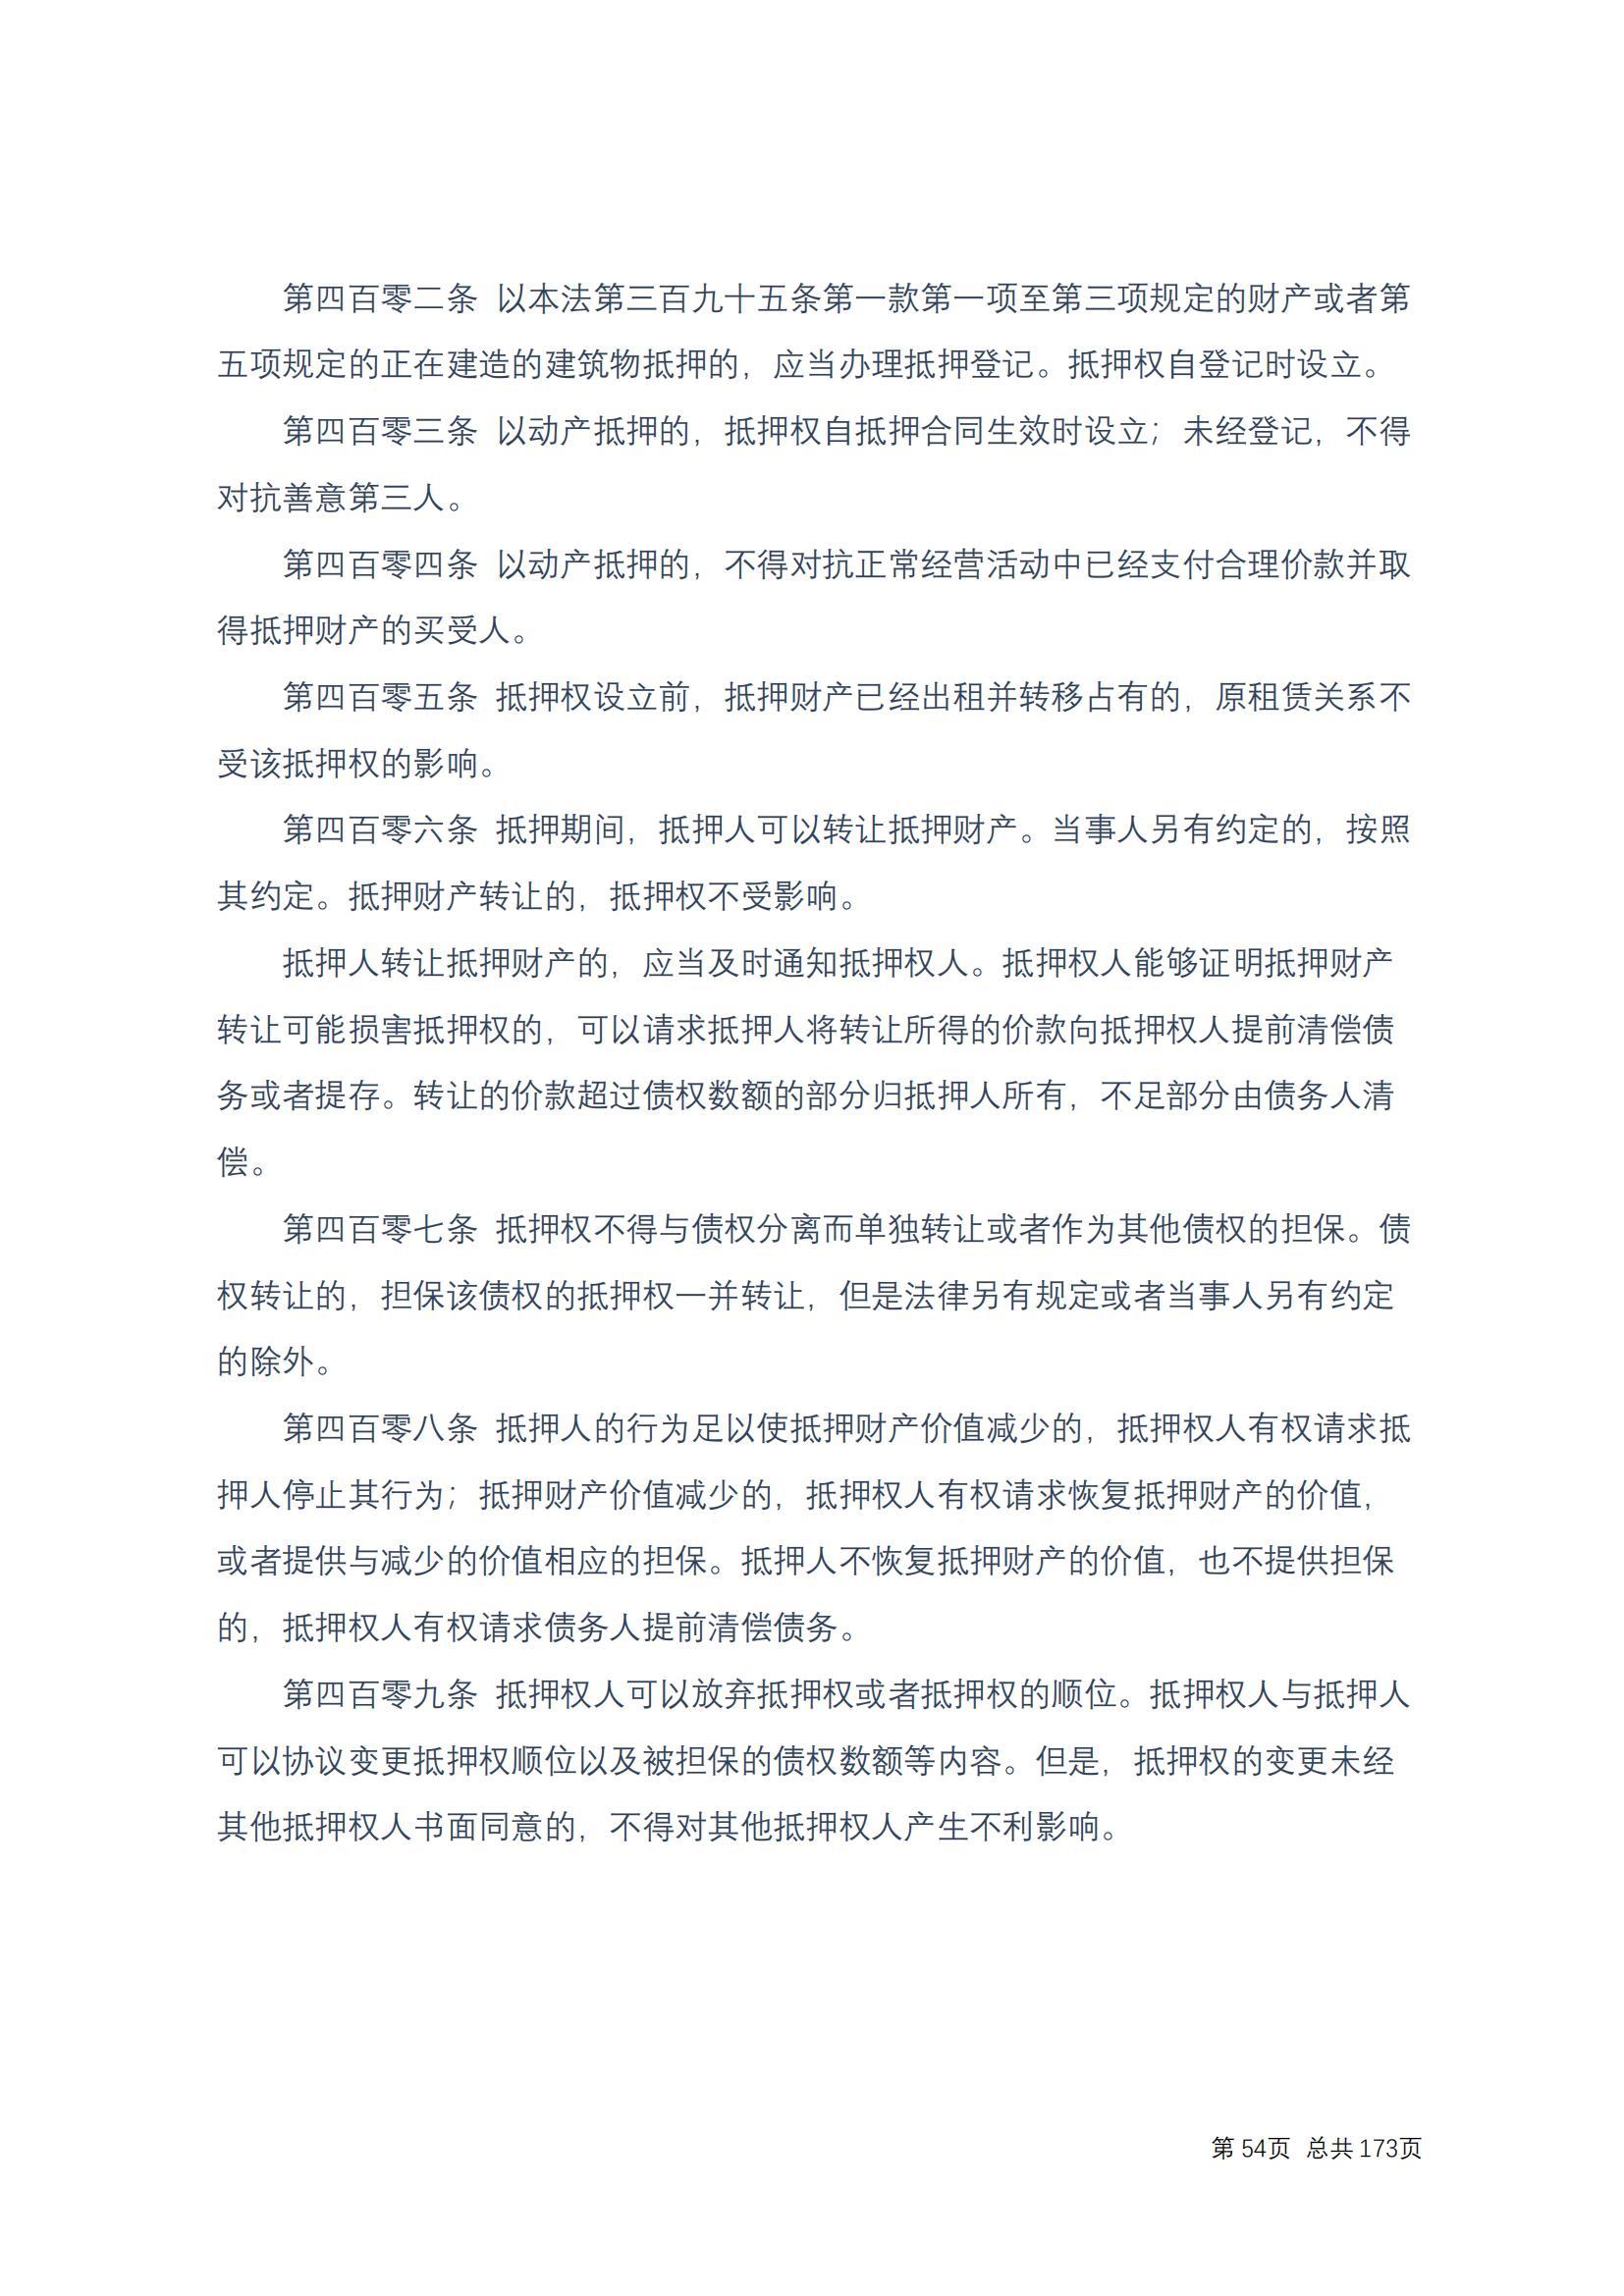 中华人民共和国民法典 修改过_53